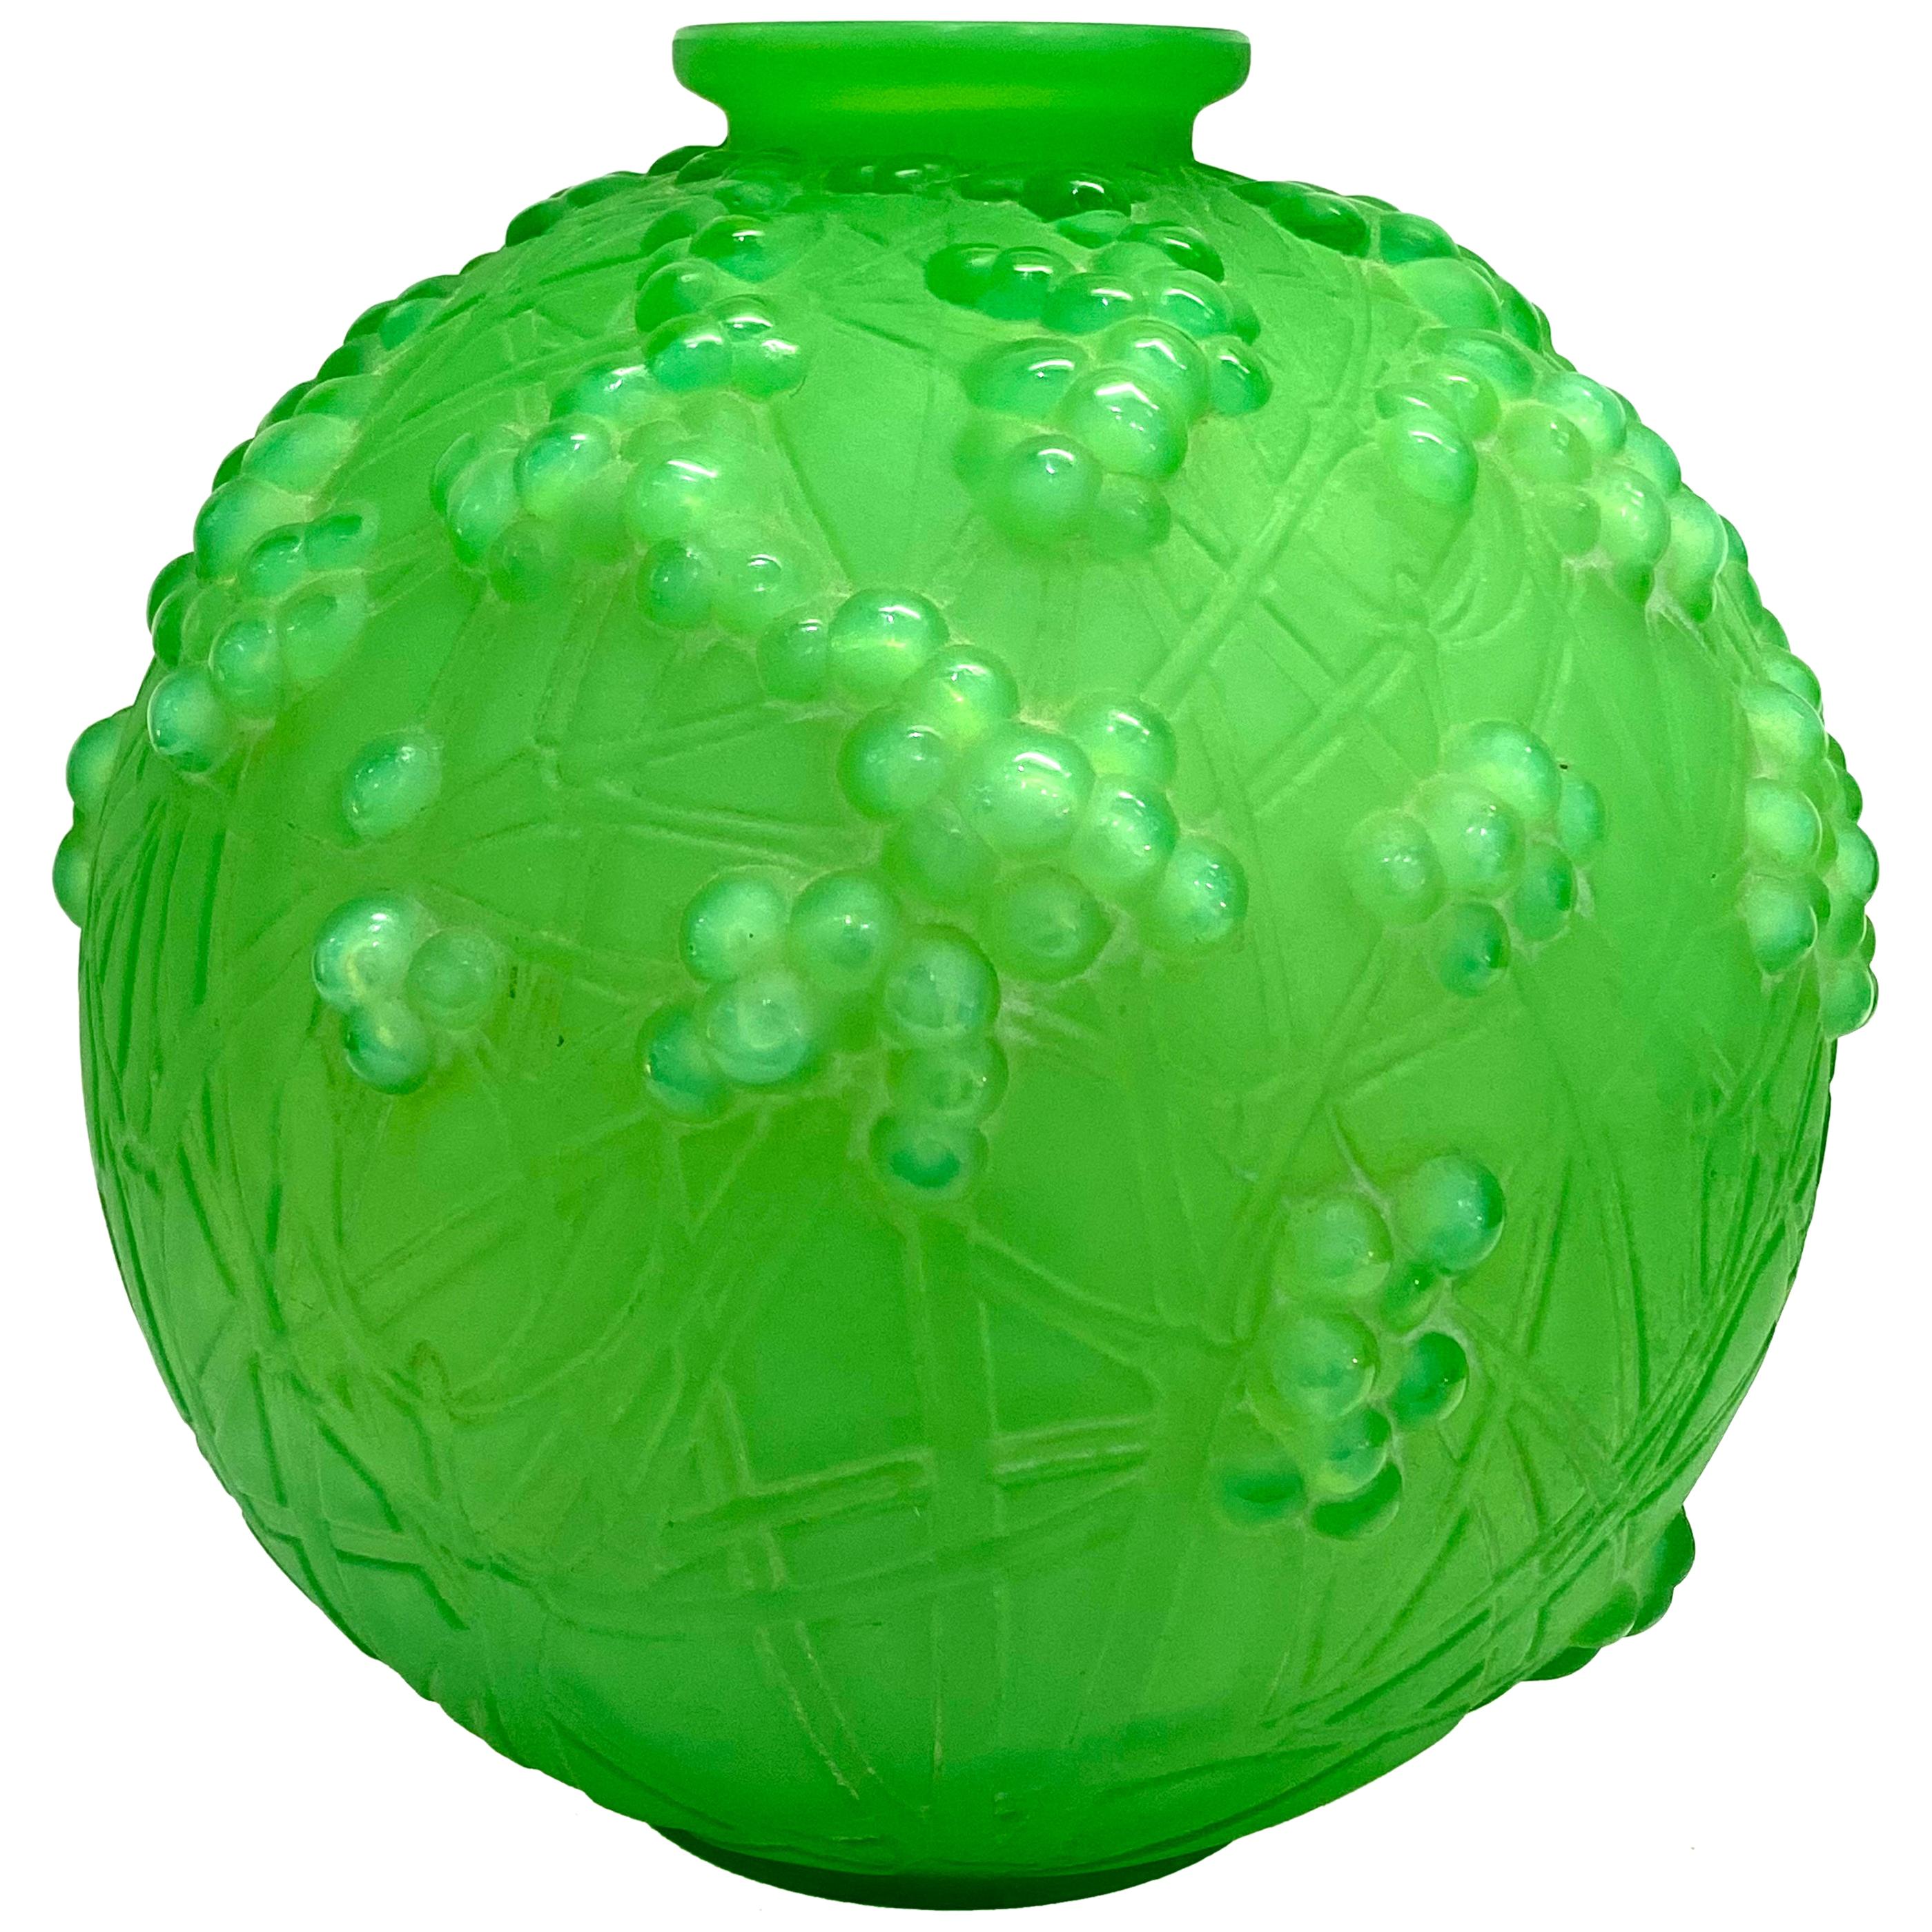 1924 René Lalique Druides Vase in Triple Cased Jade Green Glass Mistletoe